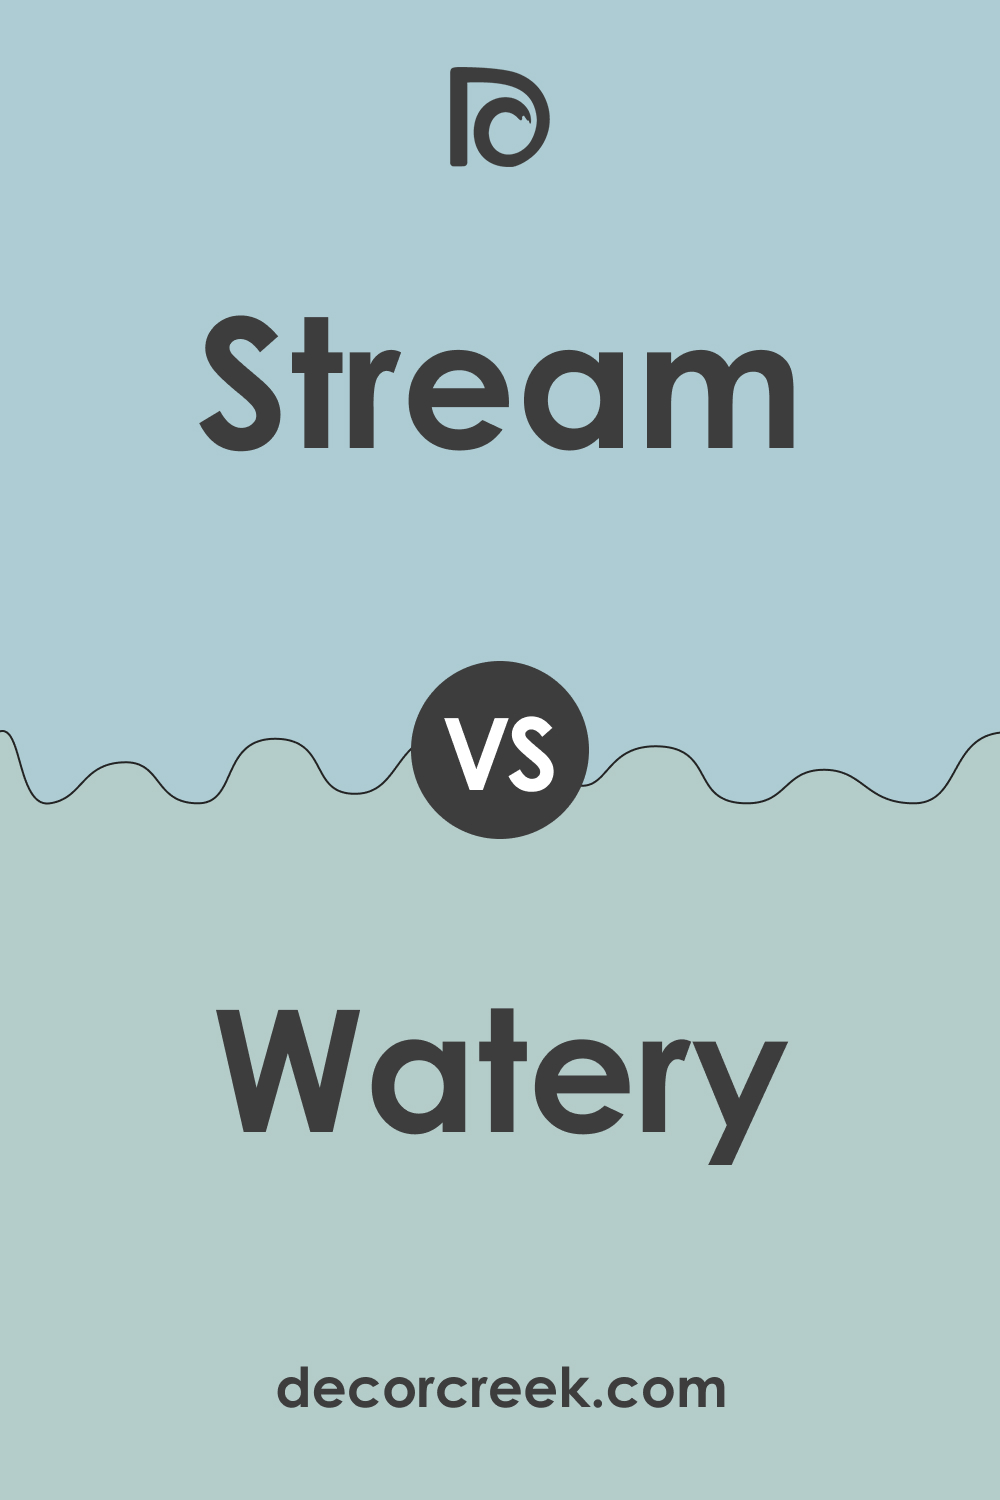 SW 6499 Stream vs SW 6478 Watery